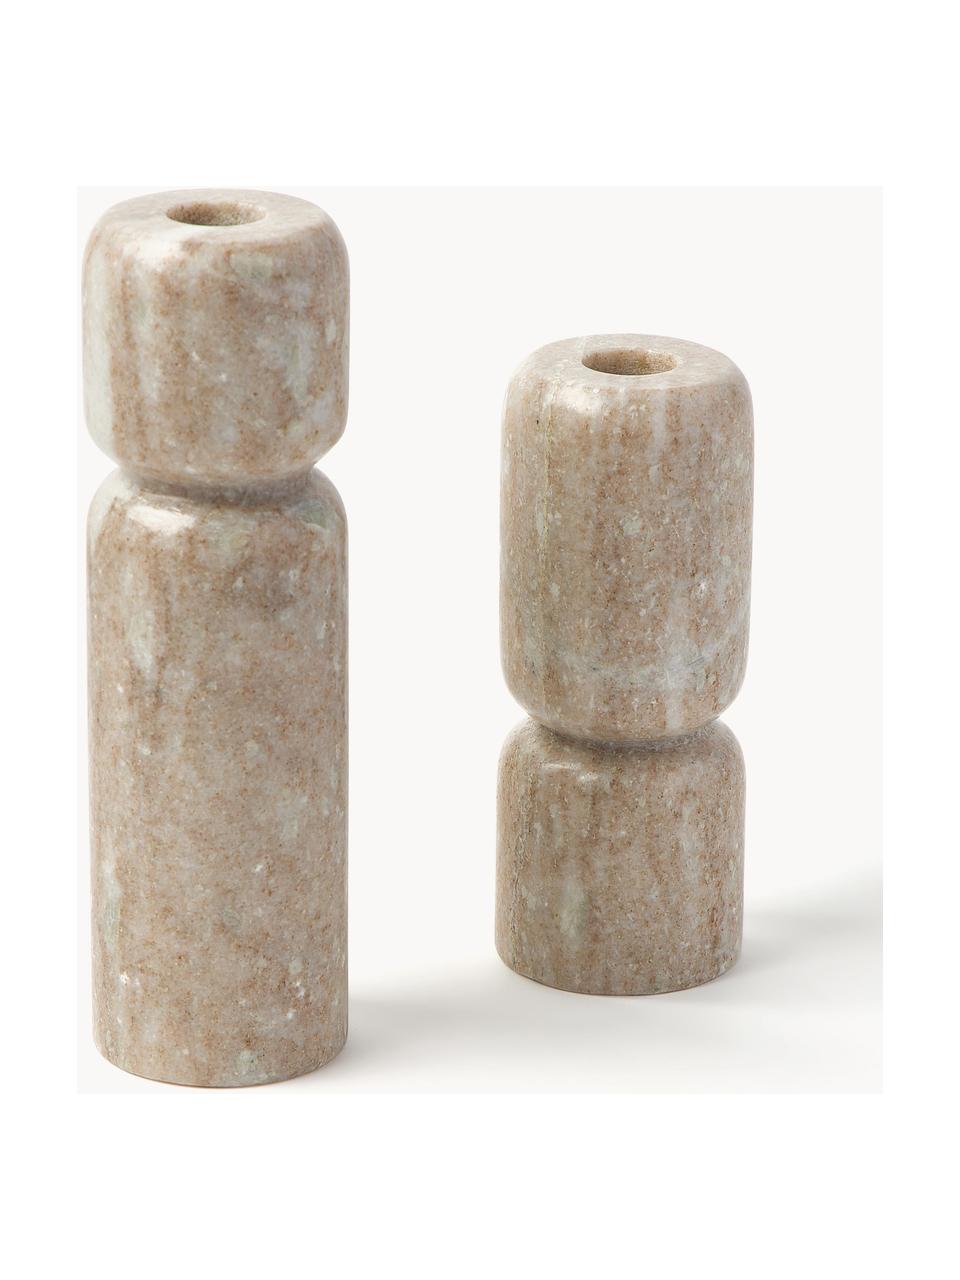 Súprava svietnikov z mramoru Como, 2 ks, Mramor
Keďže mramor je prírodný produkt, môžu sa vyskytnúť rozdiely vo farbe a v mramorovaní, Béžová, mramorovaná, Súprava s rôznymi veľkosťami